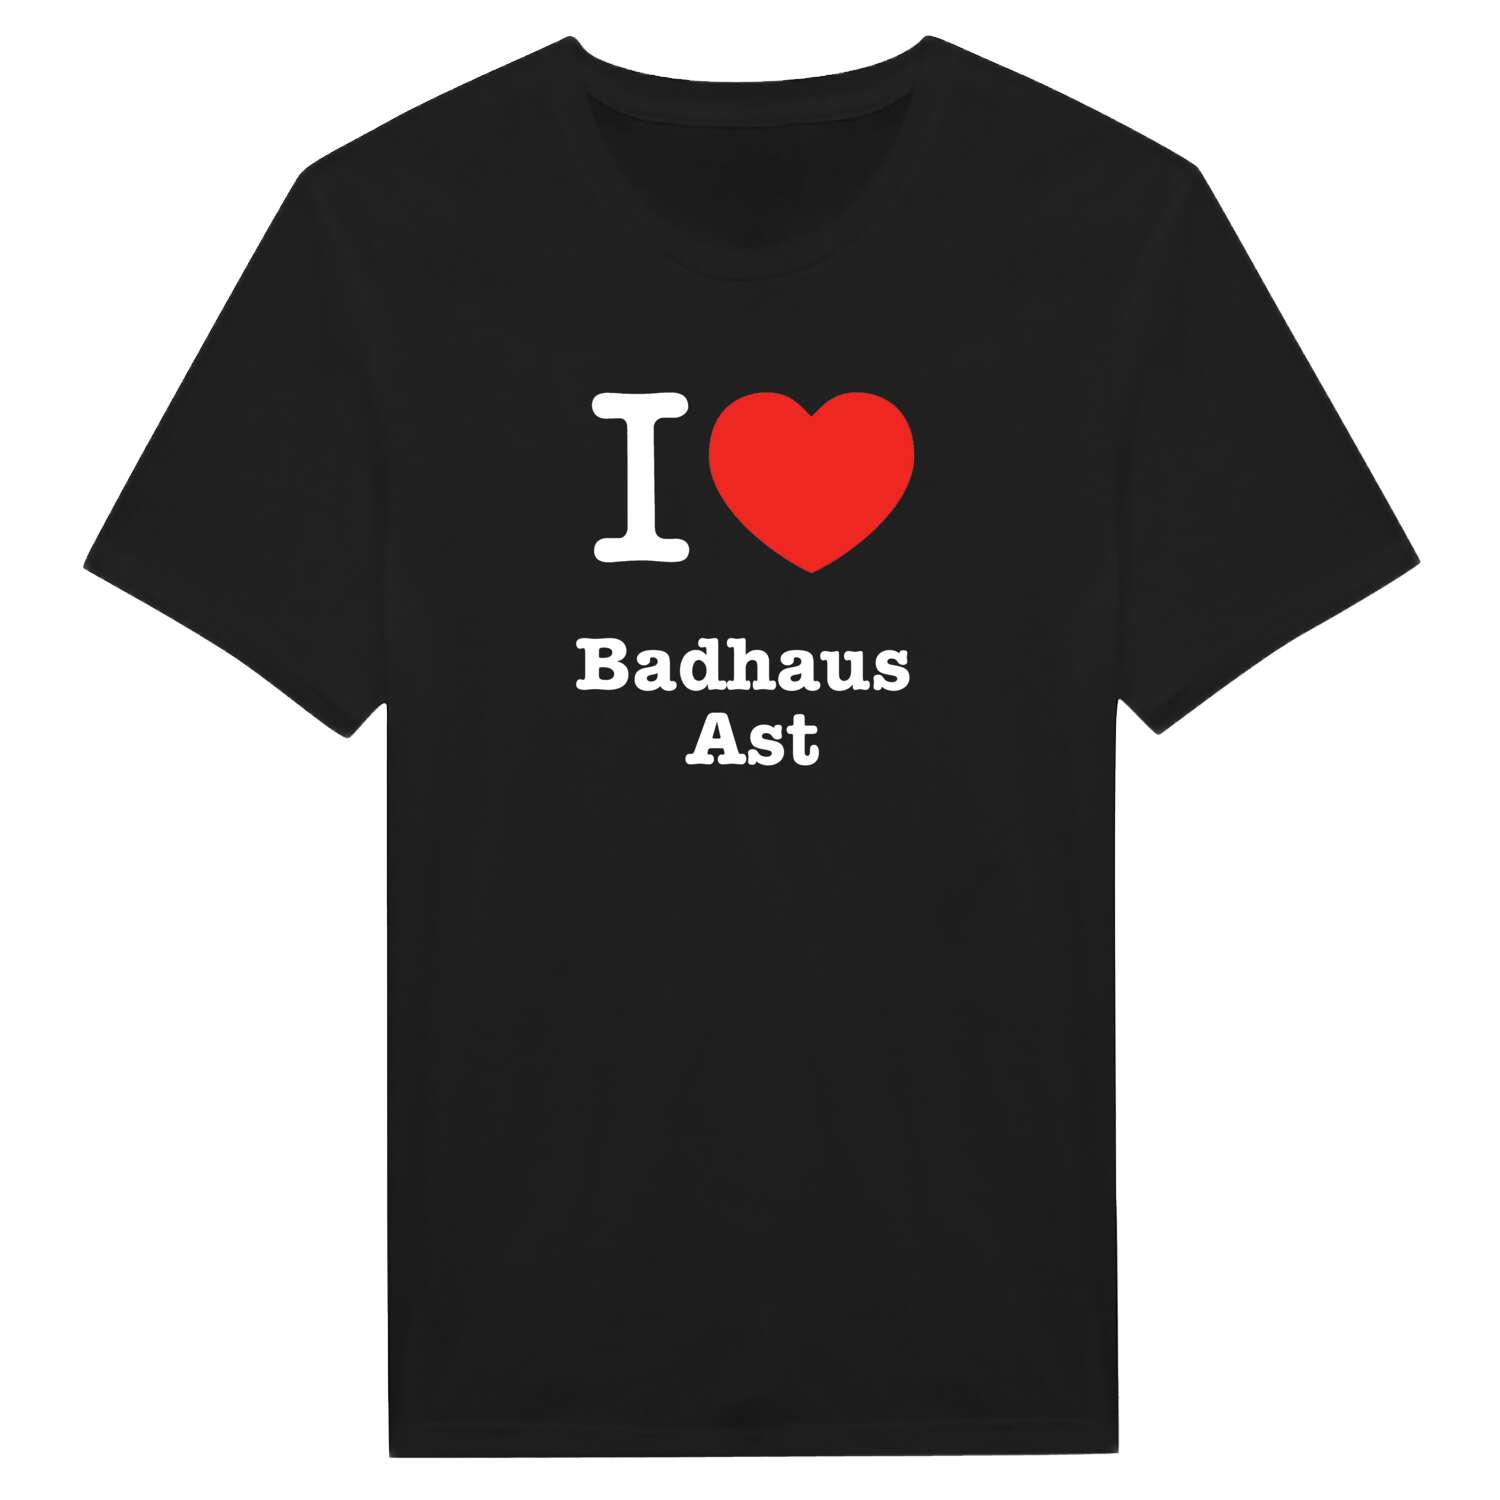 Badhaus Ast T-Shirt »I love«